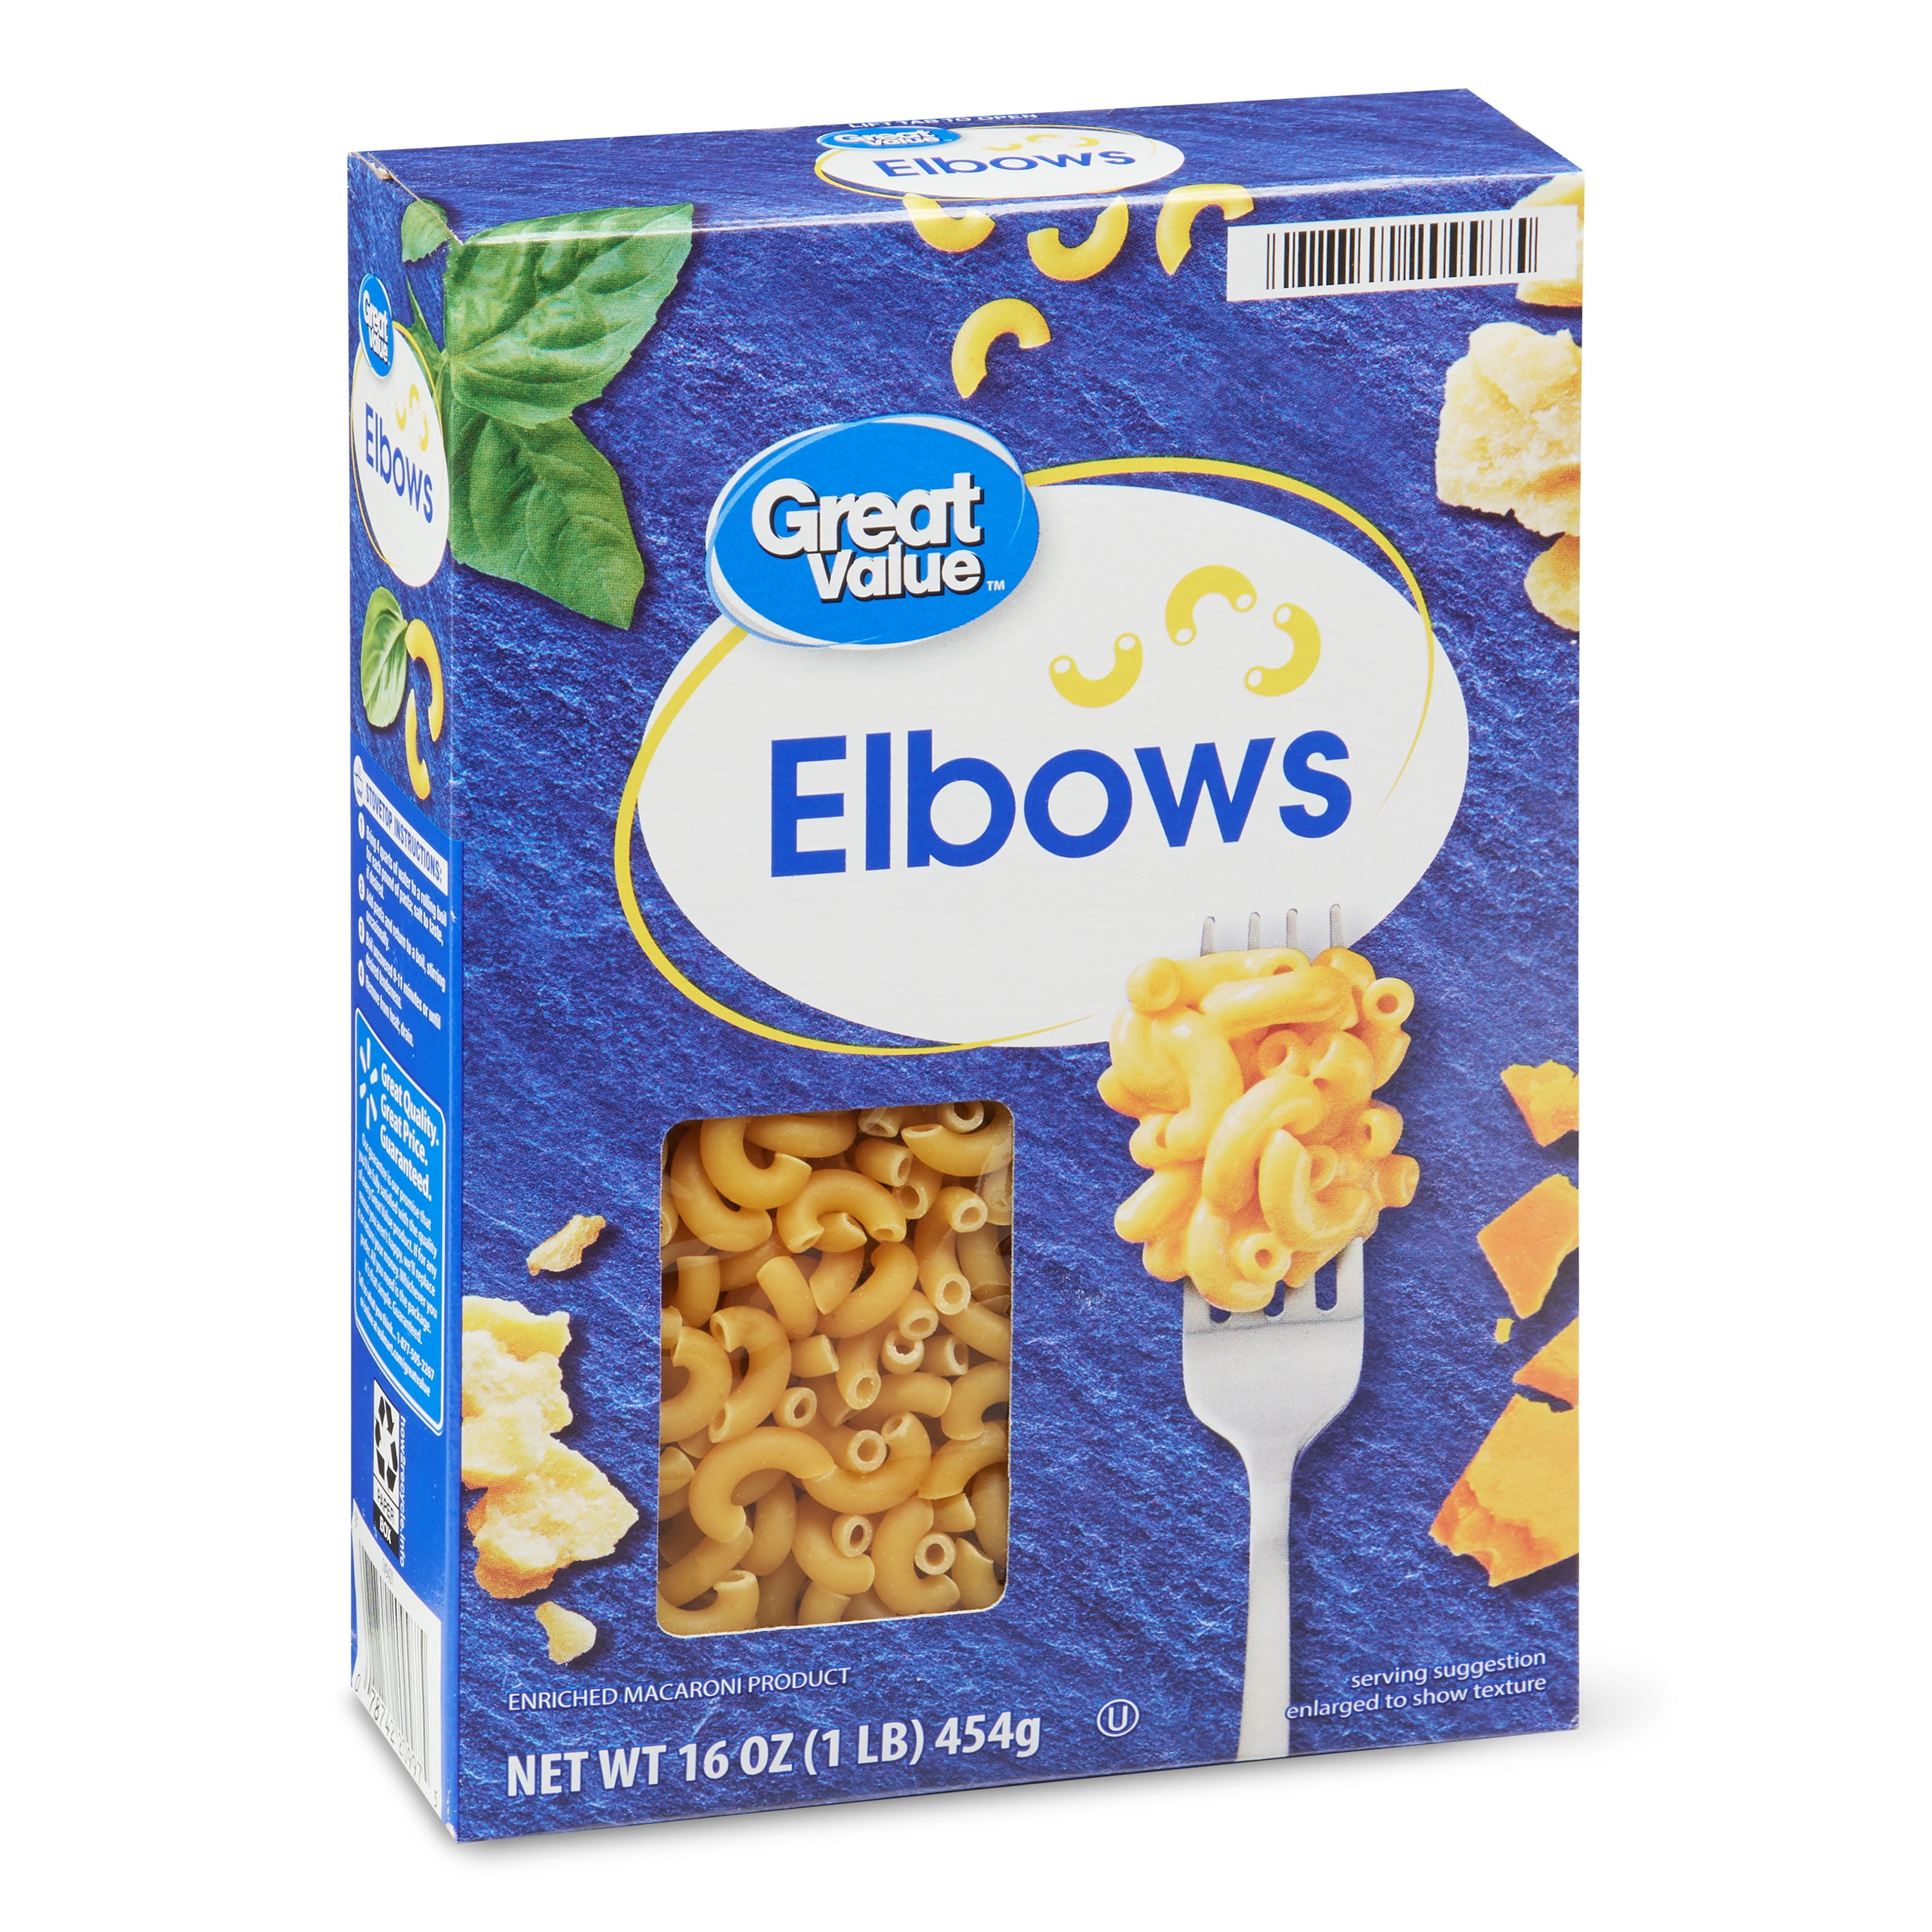 Great Value Elbows Pasta, 16 oz